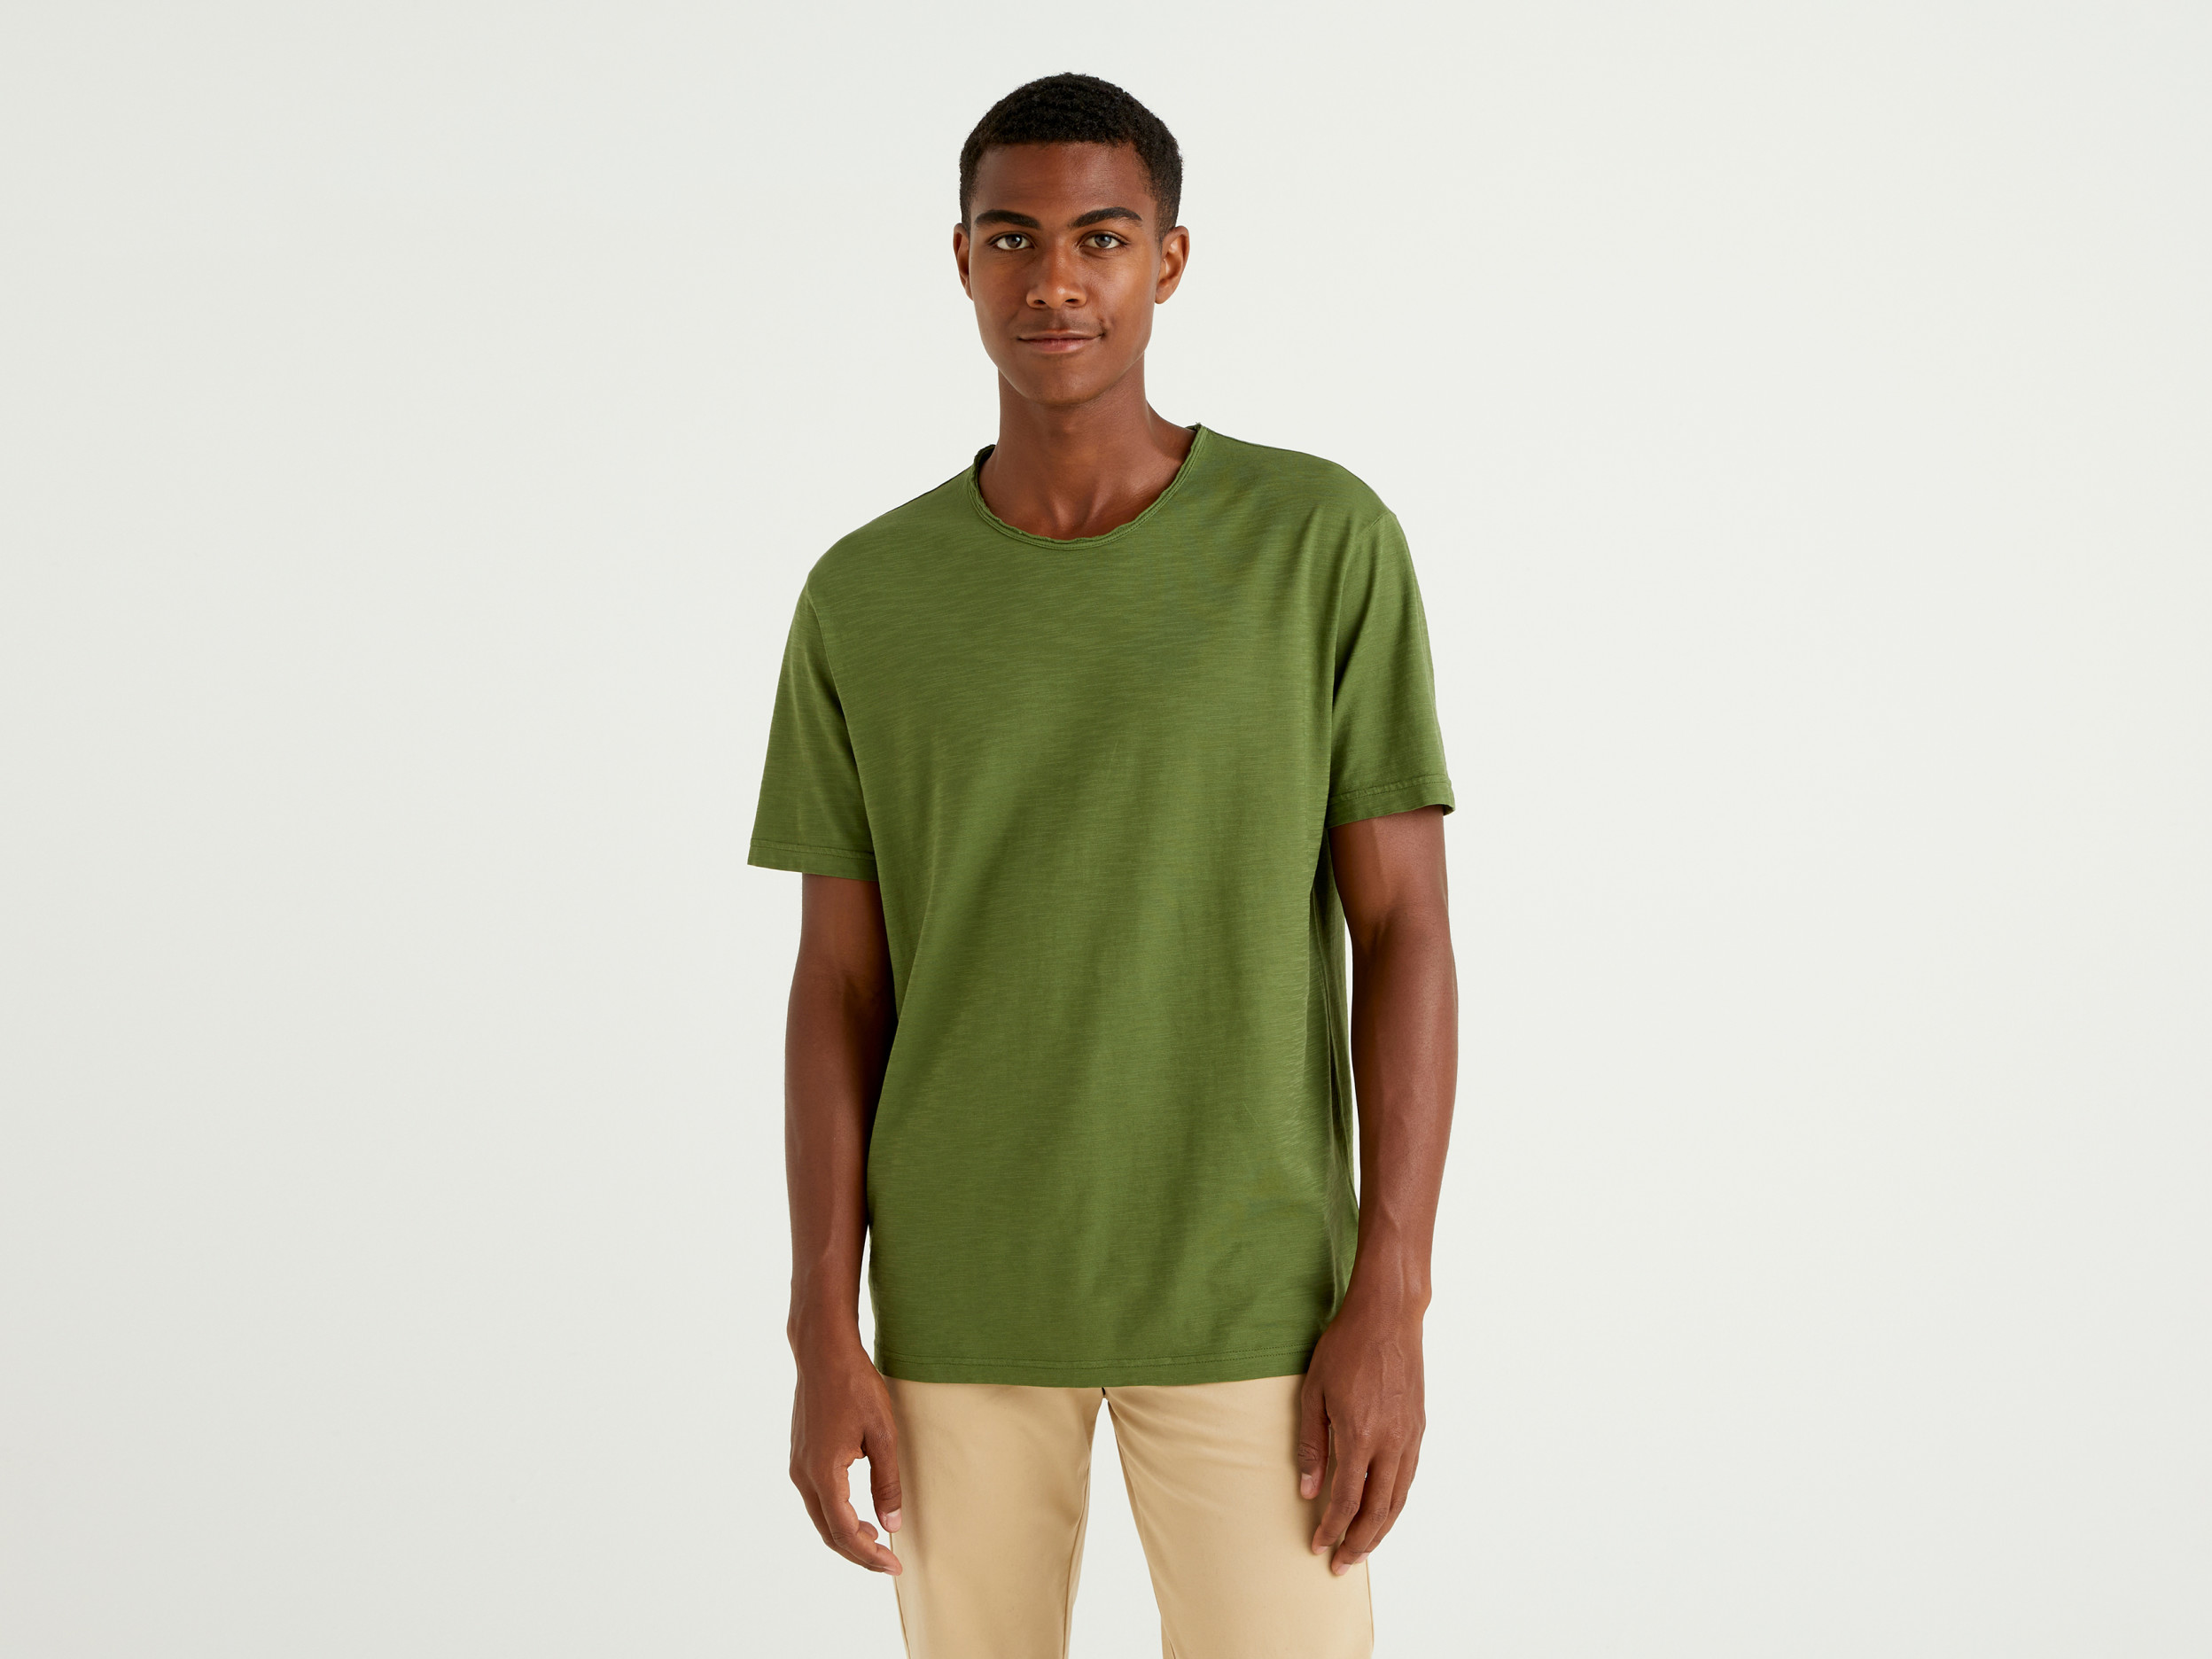 Benetton, T shirt Verde In Cotone Fiammato, Verde Militare, Uomo